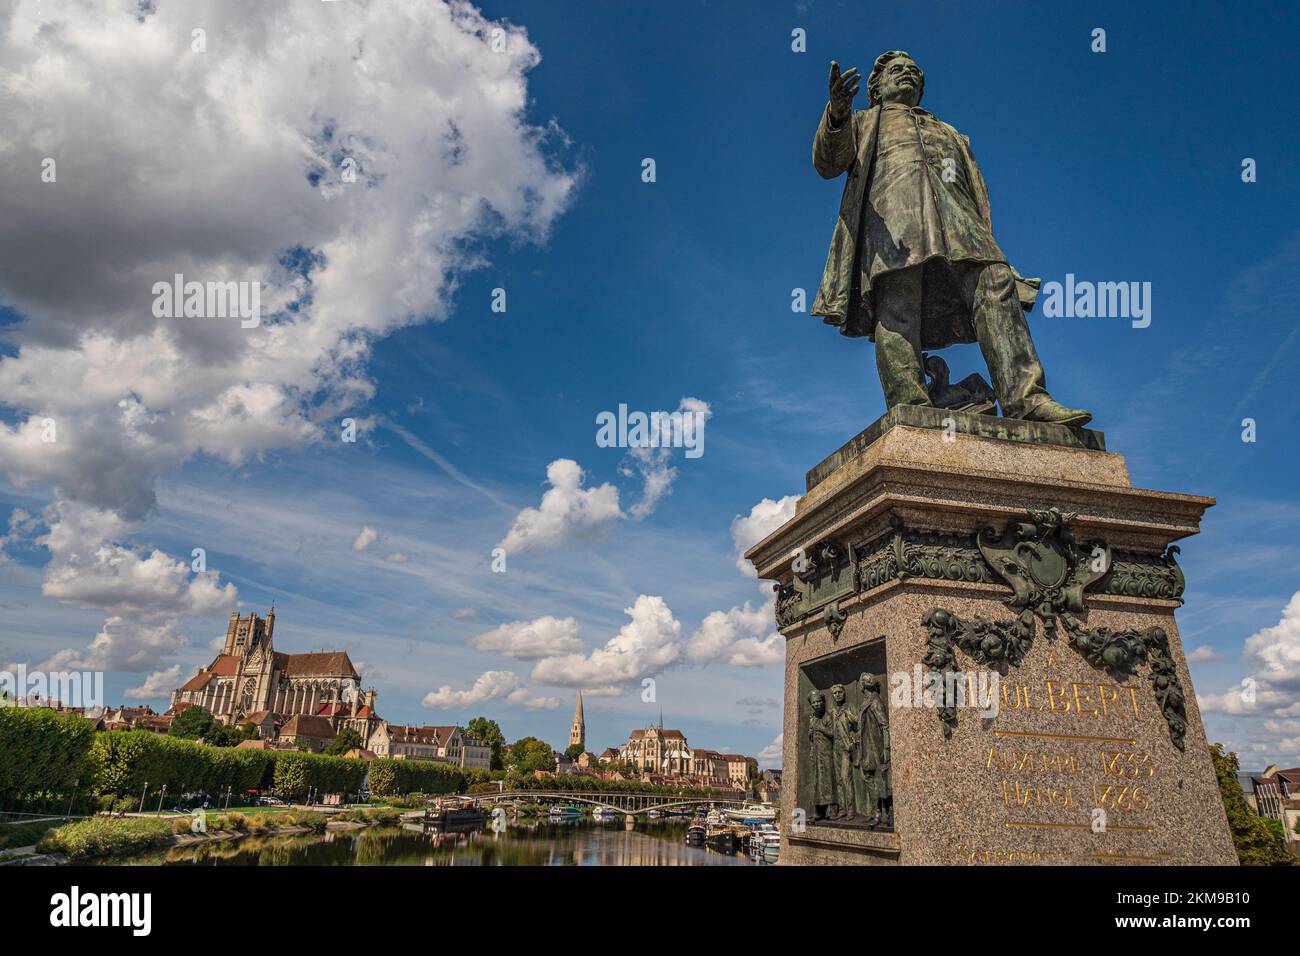 La statue de Paul Bert sur le pont Paul Bert à Auxerre, Yonne, France Banque D'Images